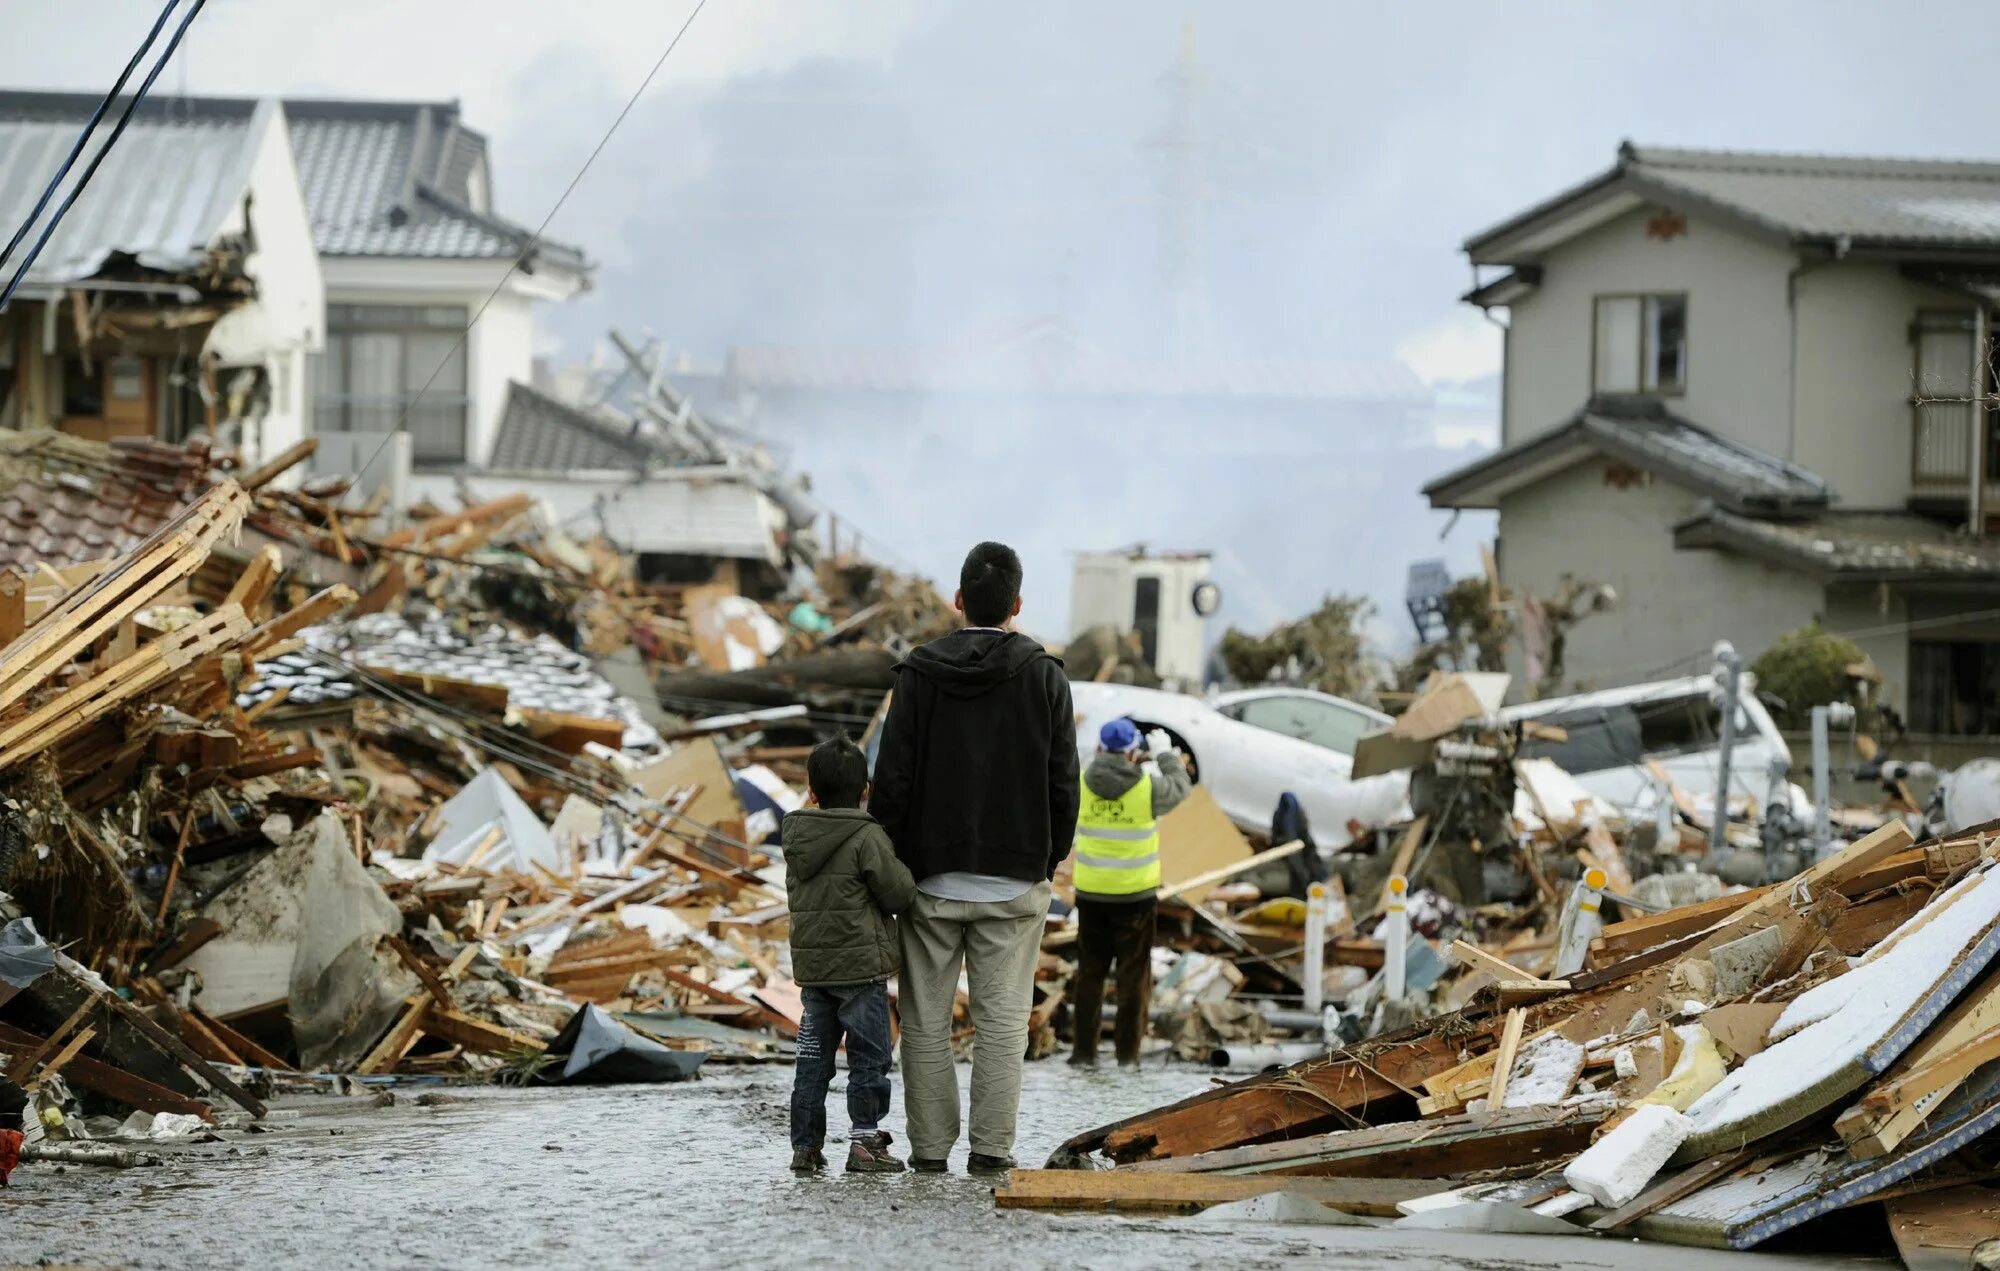 В мире происходят катаклизмы. ЦУНАМИ В Японии в 2011. Землетрясение и ЦУНАМИ В Японии. Стихийные бедствия в Японии ЦУНАМИ. Великое землетрясение Восточной Японии 2011.